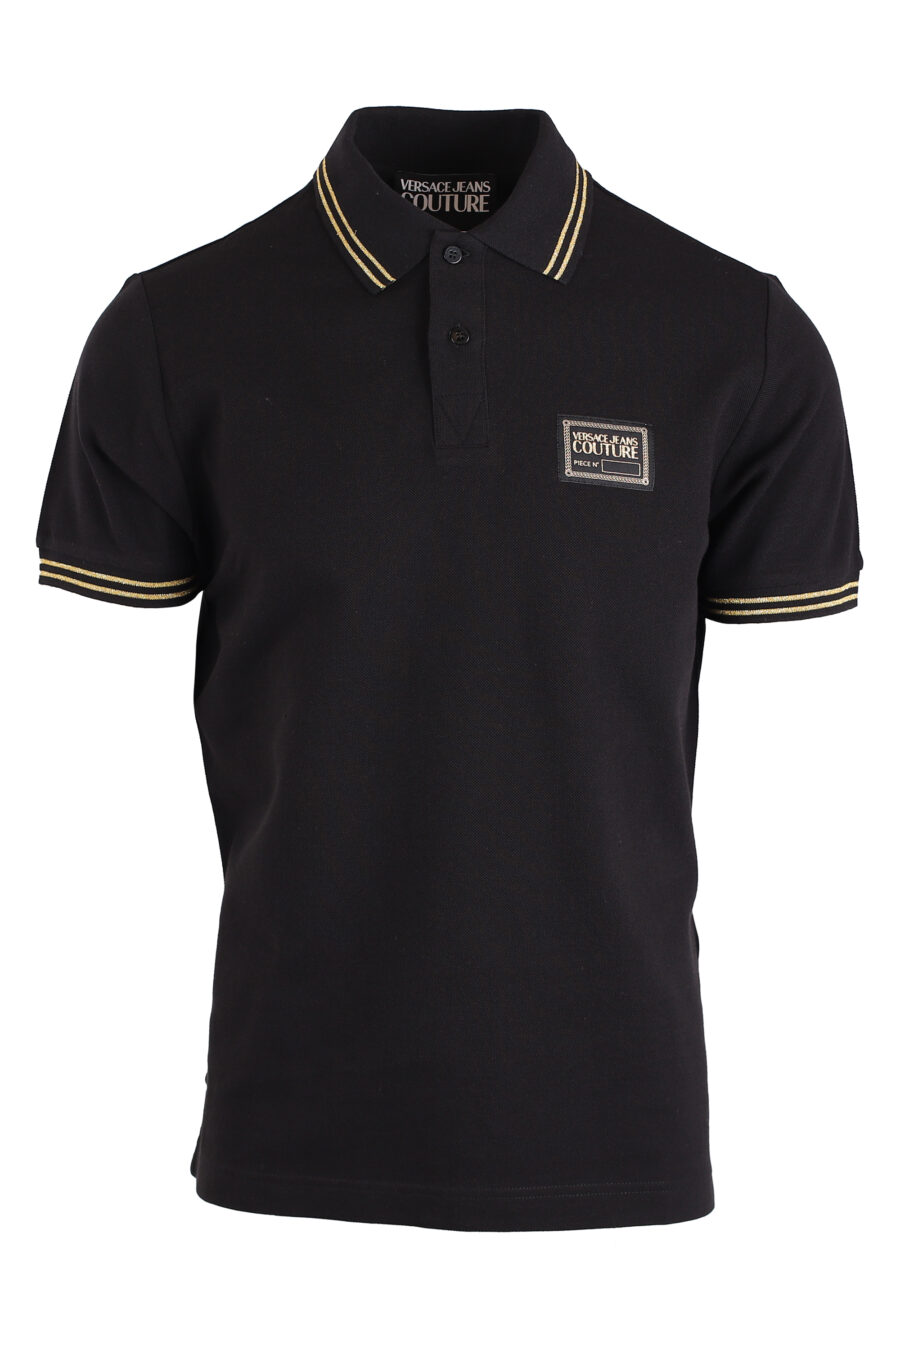 Schwarzes Poloshirt mit goldenen Streifen und Logostempel - IMG 4156